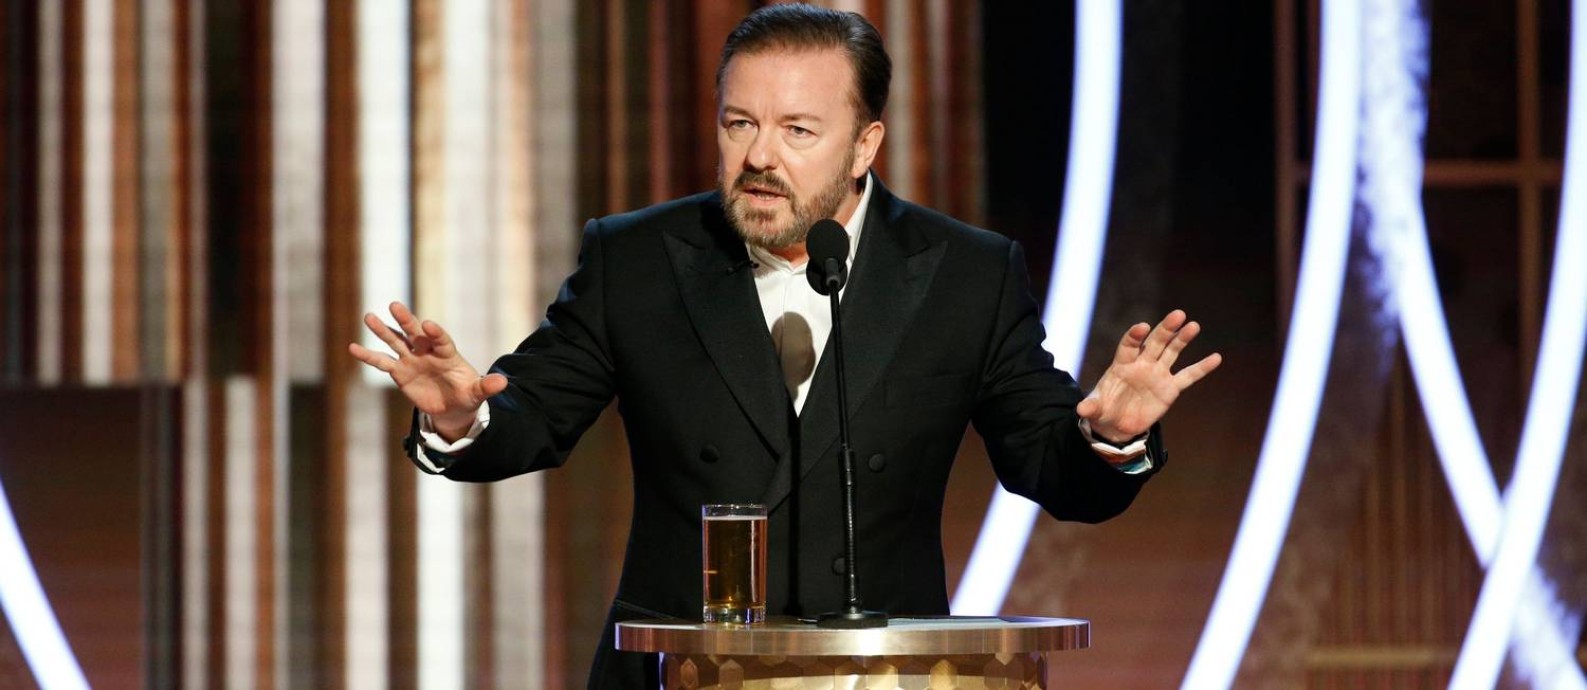 Ricky Gervais durante o Globo de Ouro 2020 Foto: HANDOUT / REUTERS